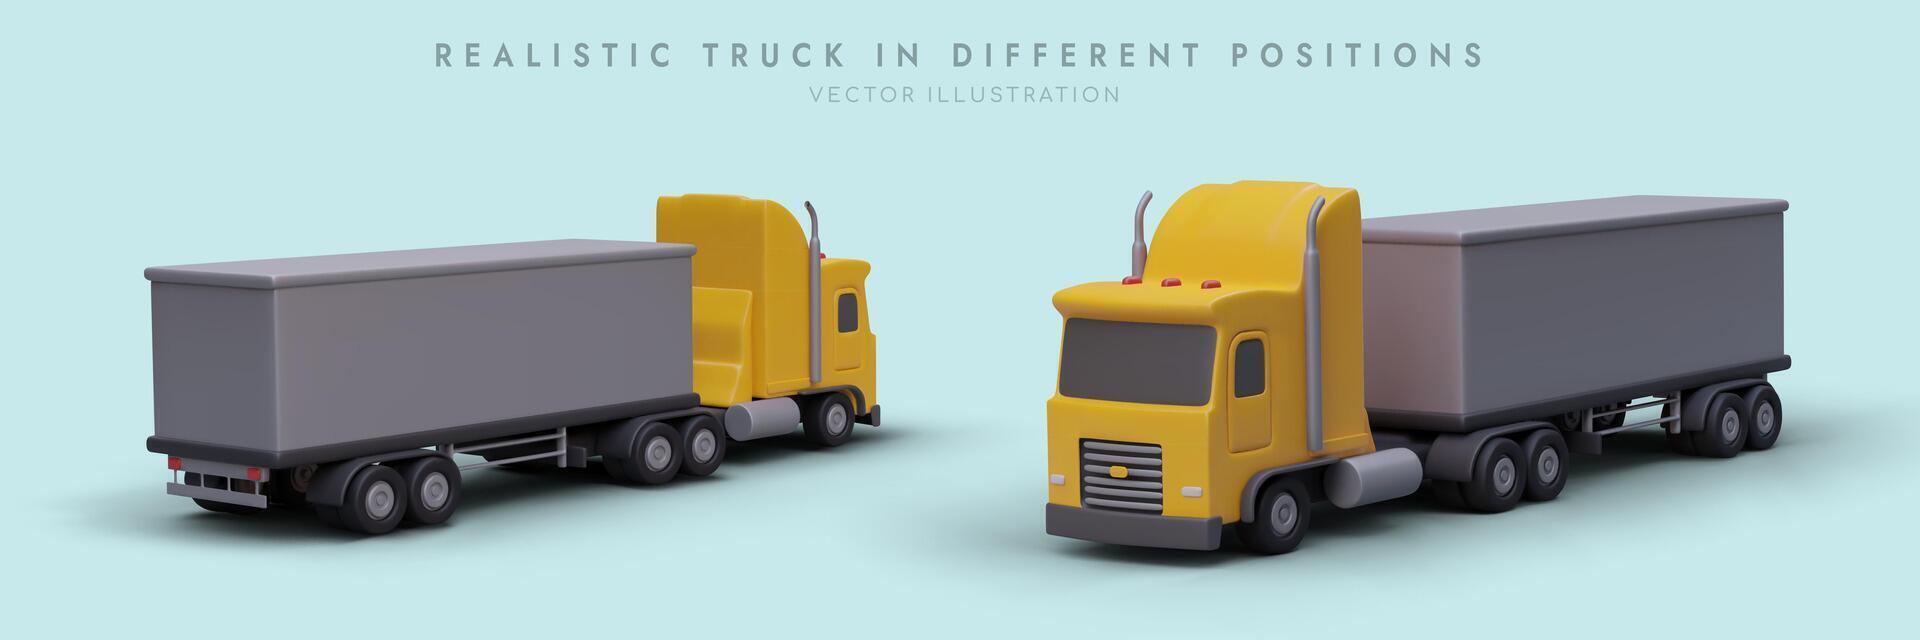 réaliste camions dans différent positions. de face et retour vue vecteur